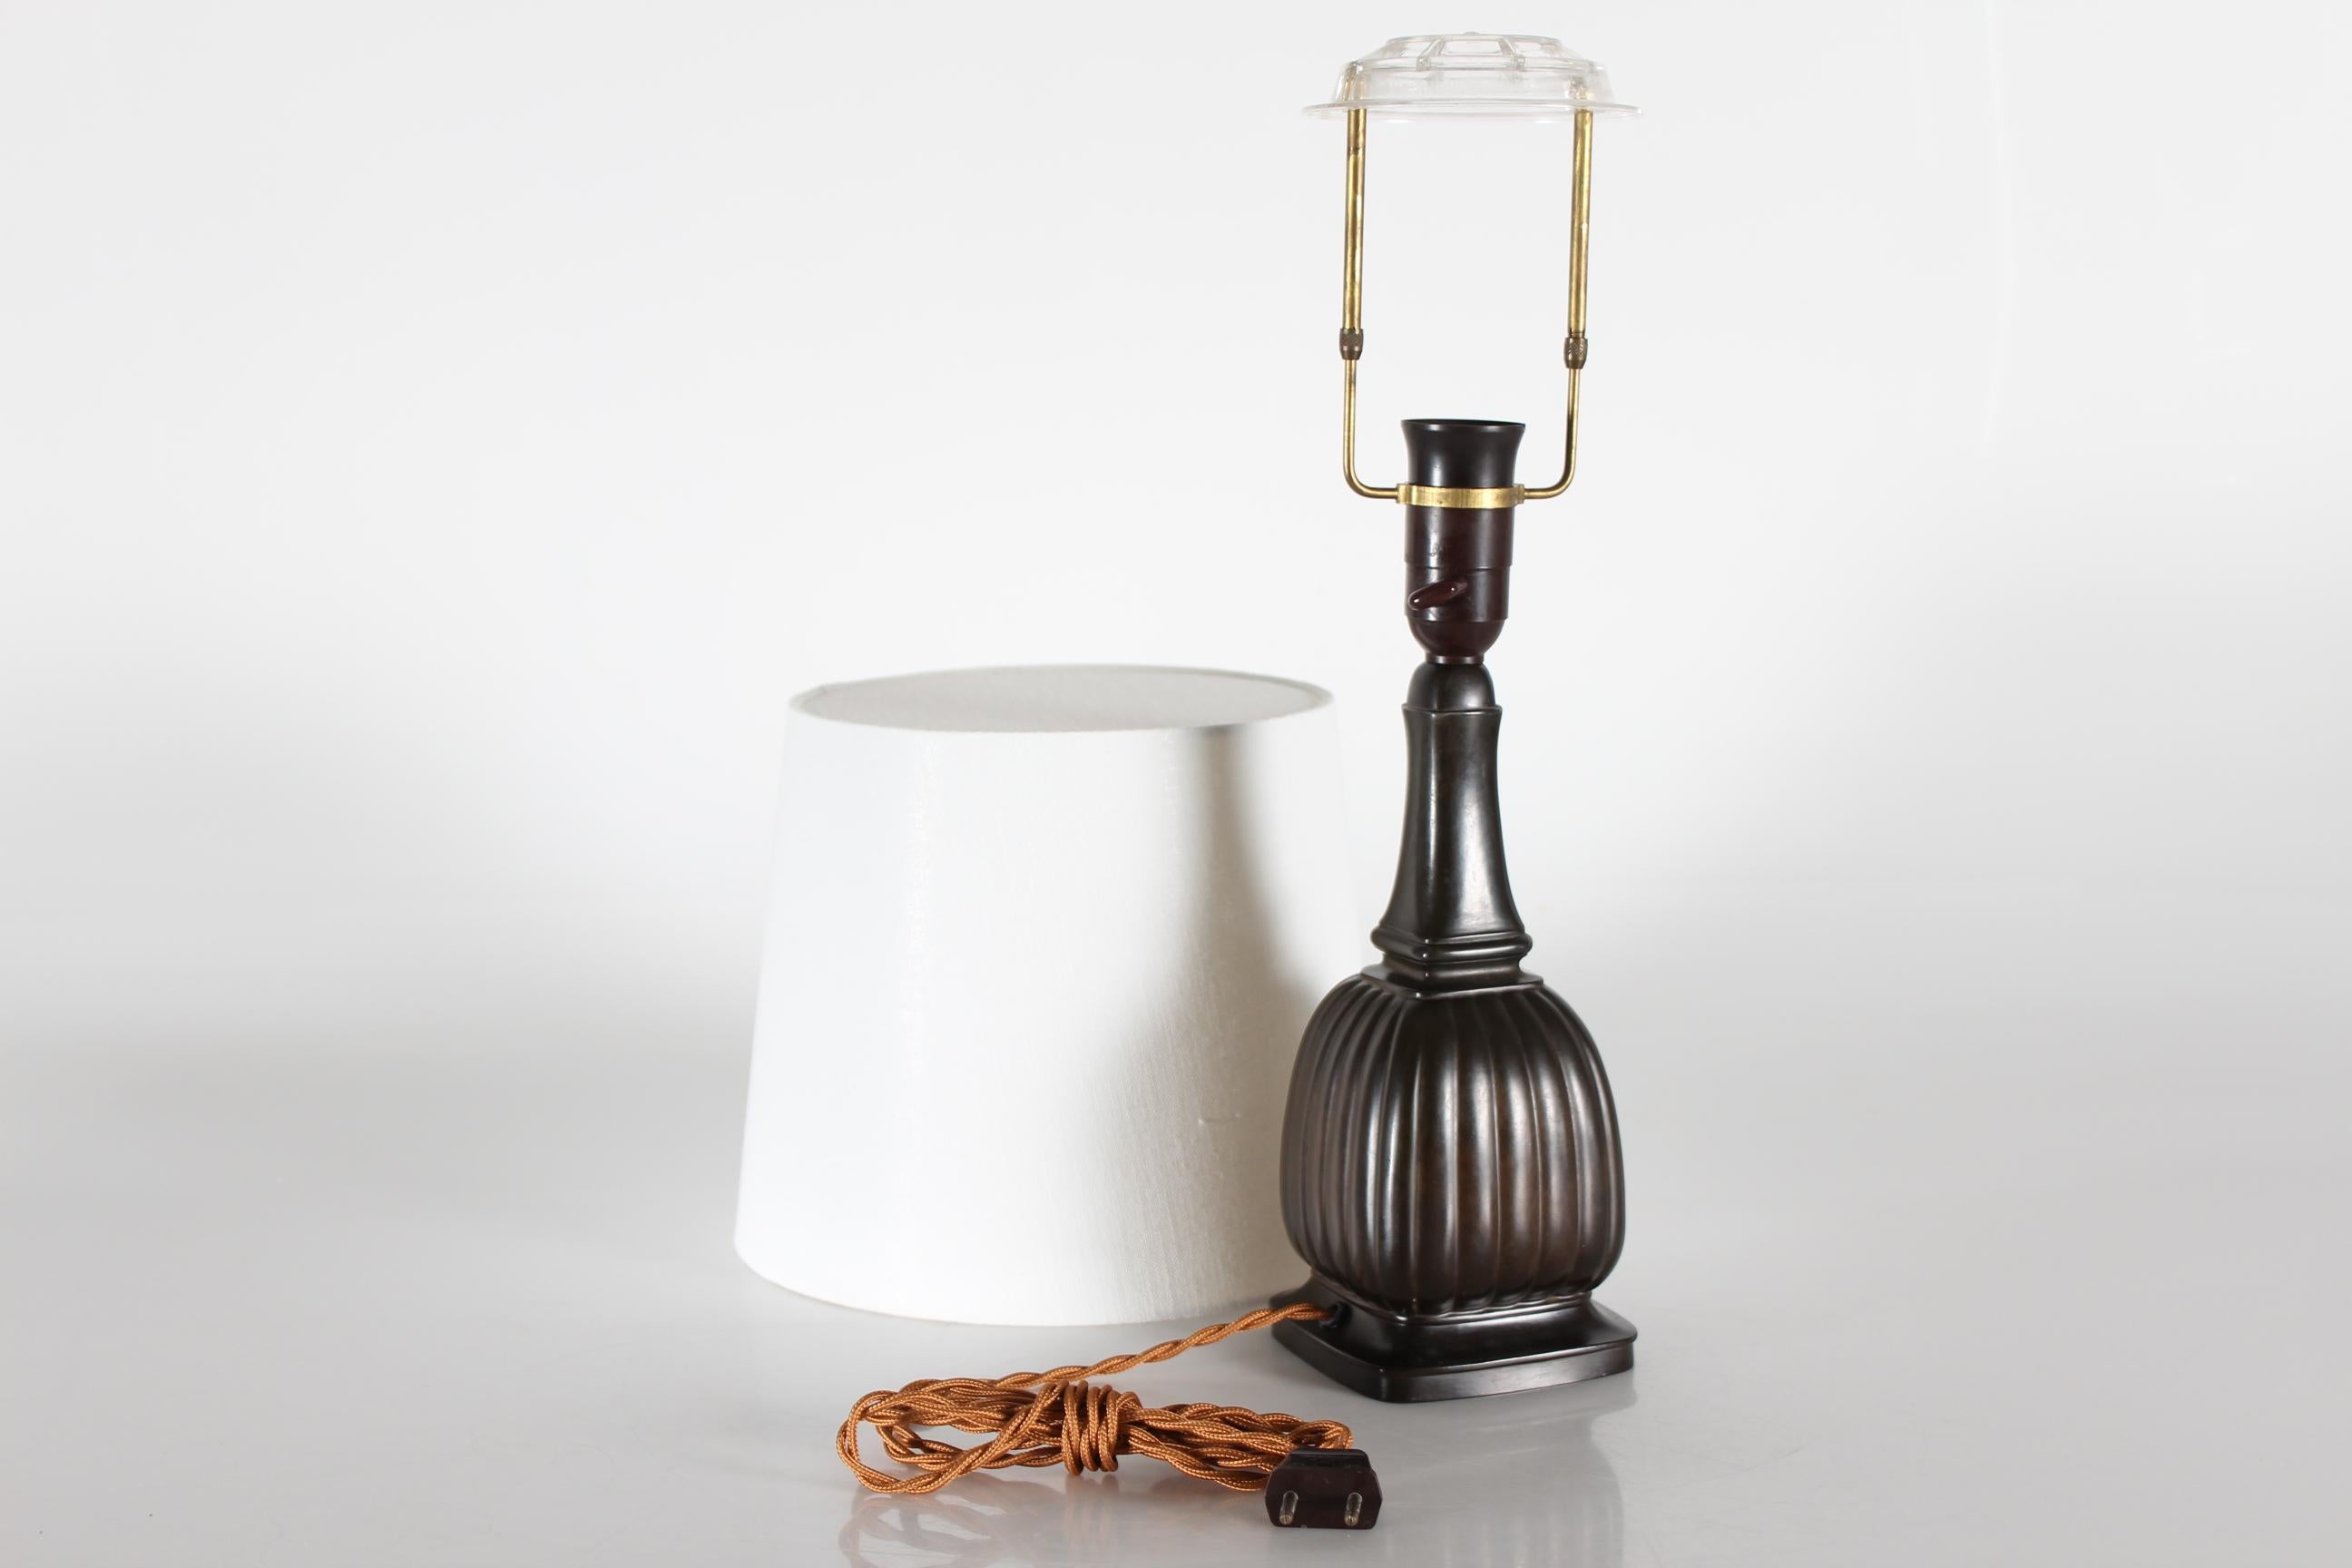 Lampe de table Art déco danoise de Just Andersen (1884-1943) réalisée dans les années 1930. 

Il est en très bon état vintage et présente une belle couleur en surface.

Signé avec le Monogramme de Just Andersen et le numéro de modèle